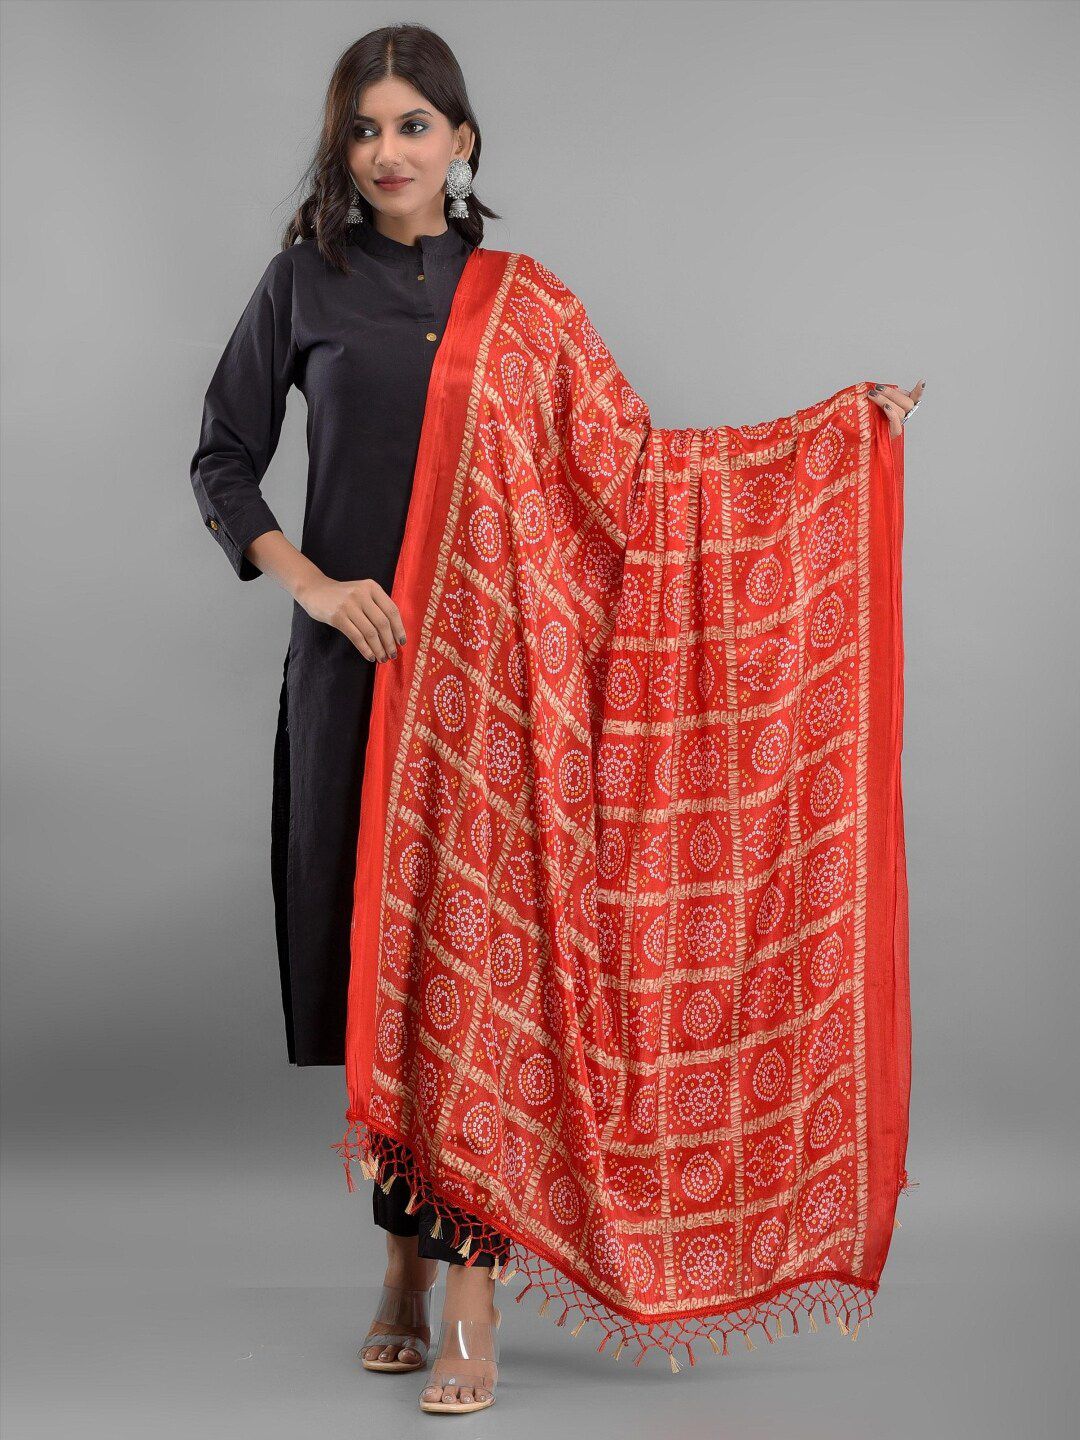 Apratim Women Red & White Printed Bandhani Dupatta Price in India